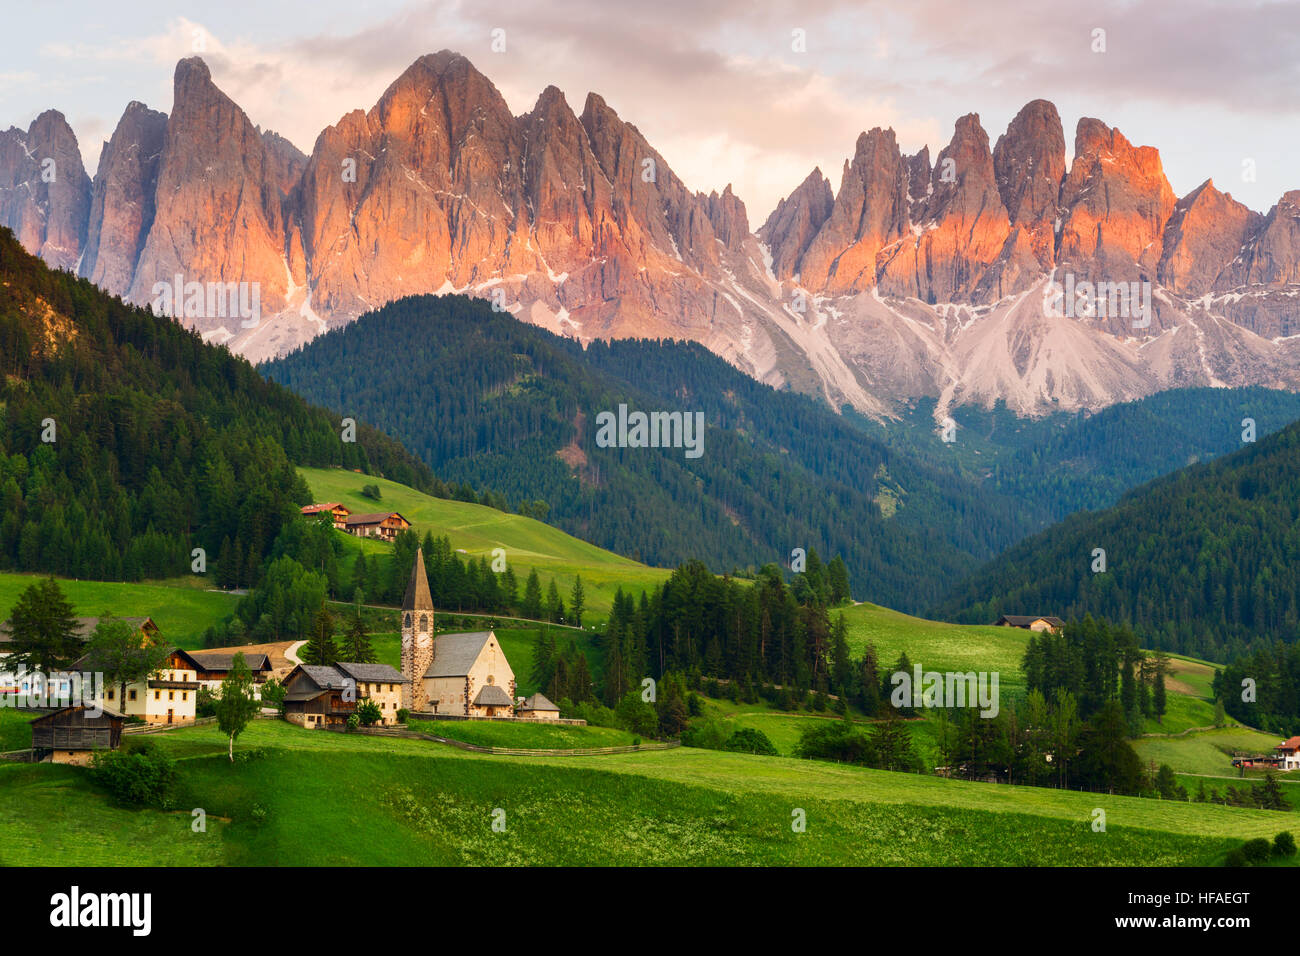 Santa Maddalena Dorf vor dem Geisler oder Geisler Dolomiten Gruppe, Val di Funes, Val di Funes, Trentino Alto Adige, Italien, Europa. Stockfoto